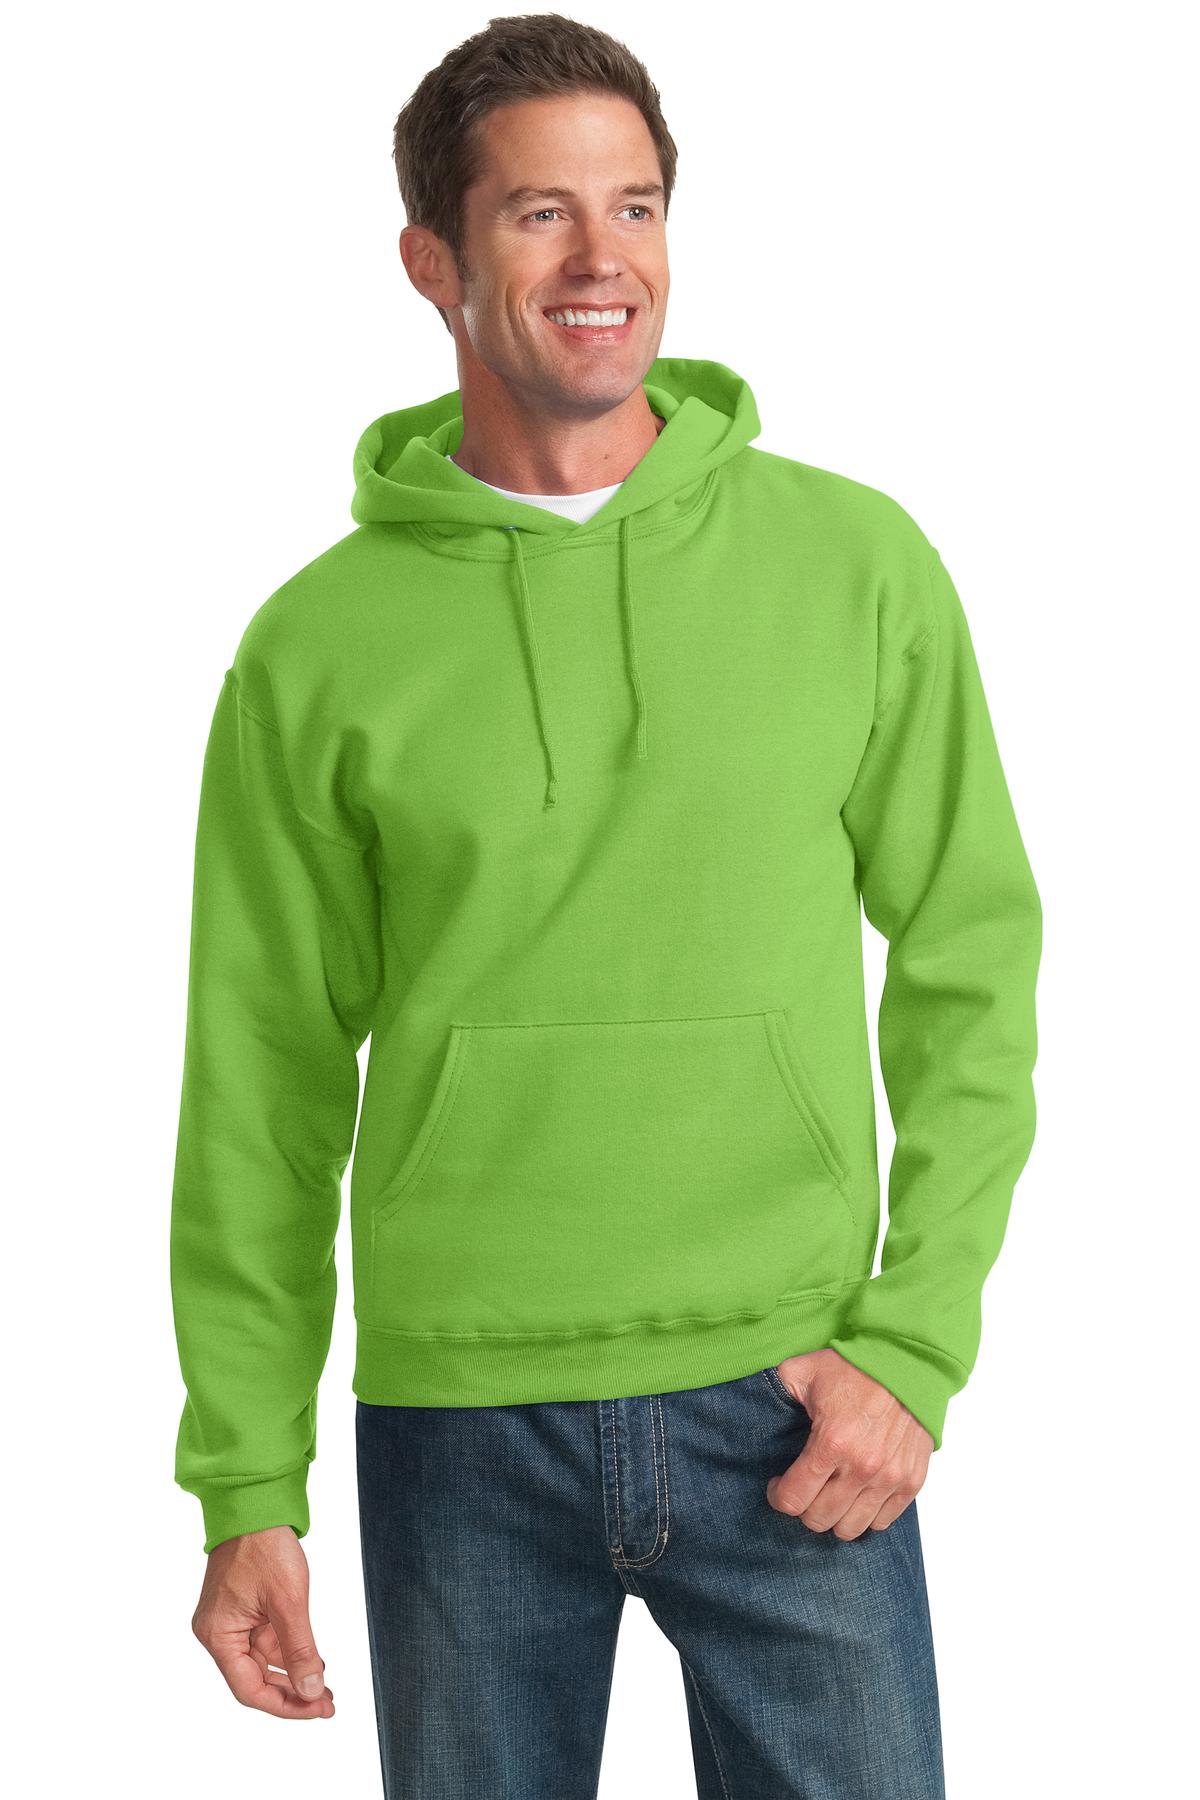 Sweatshirts/Fleece Kiwi Jerzees